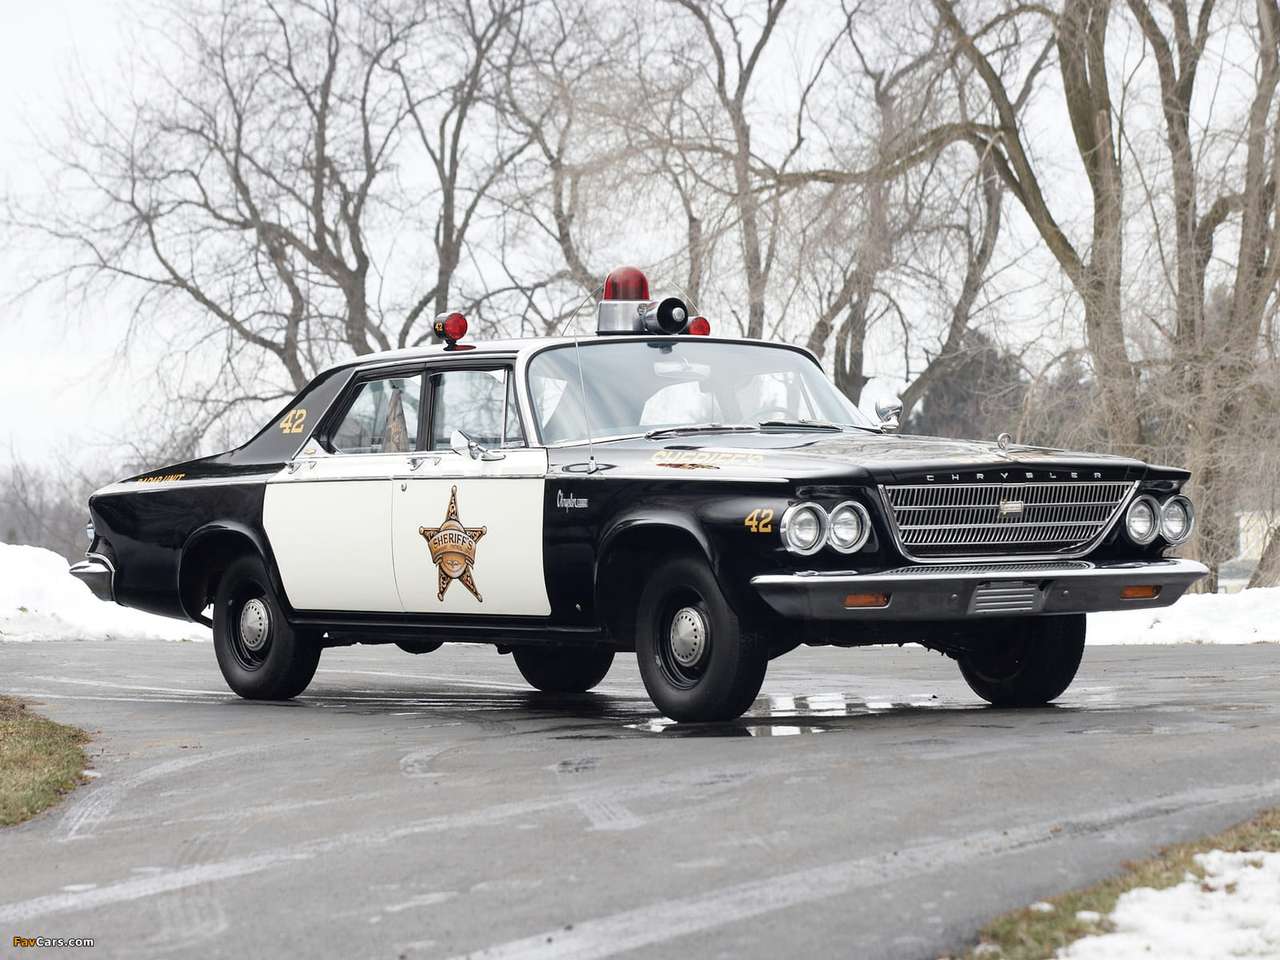 1963 Chrysler Newport Police Cruiser quebra-cabeças online